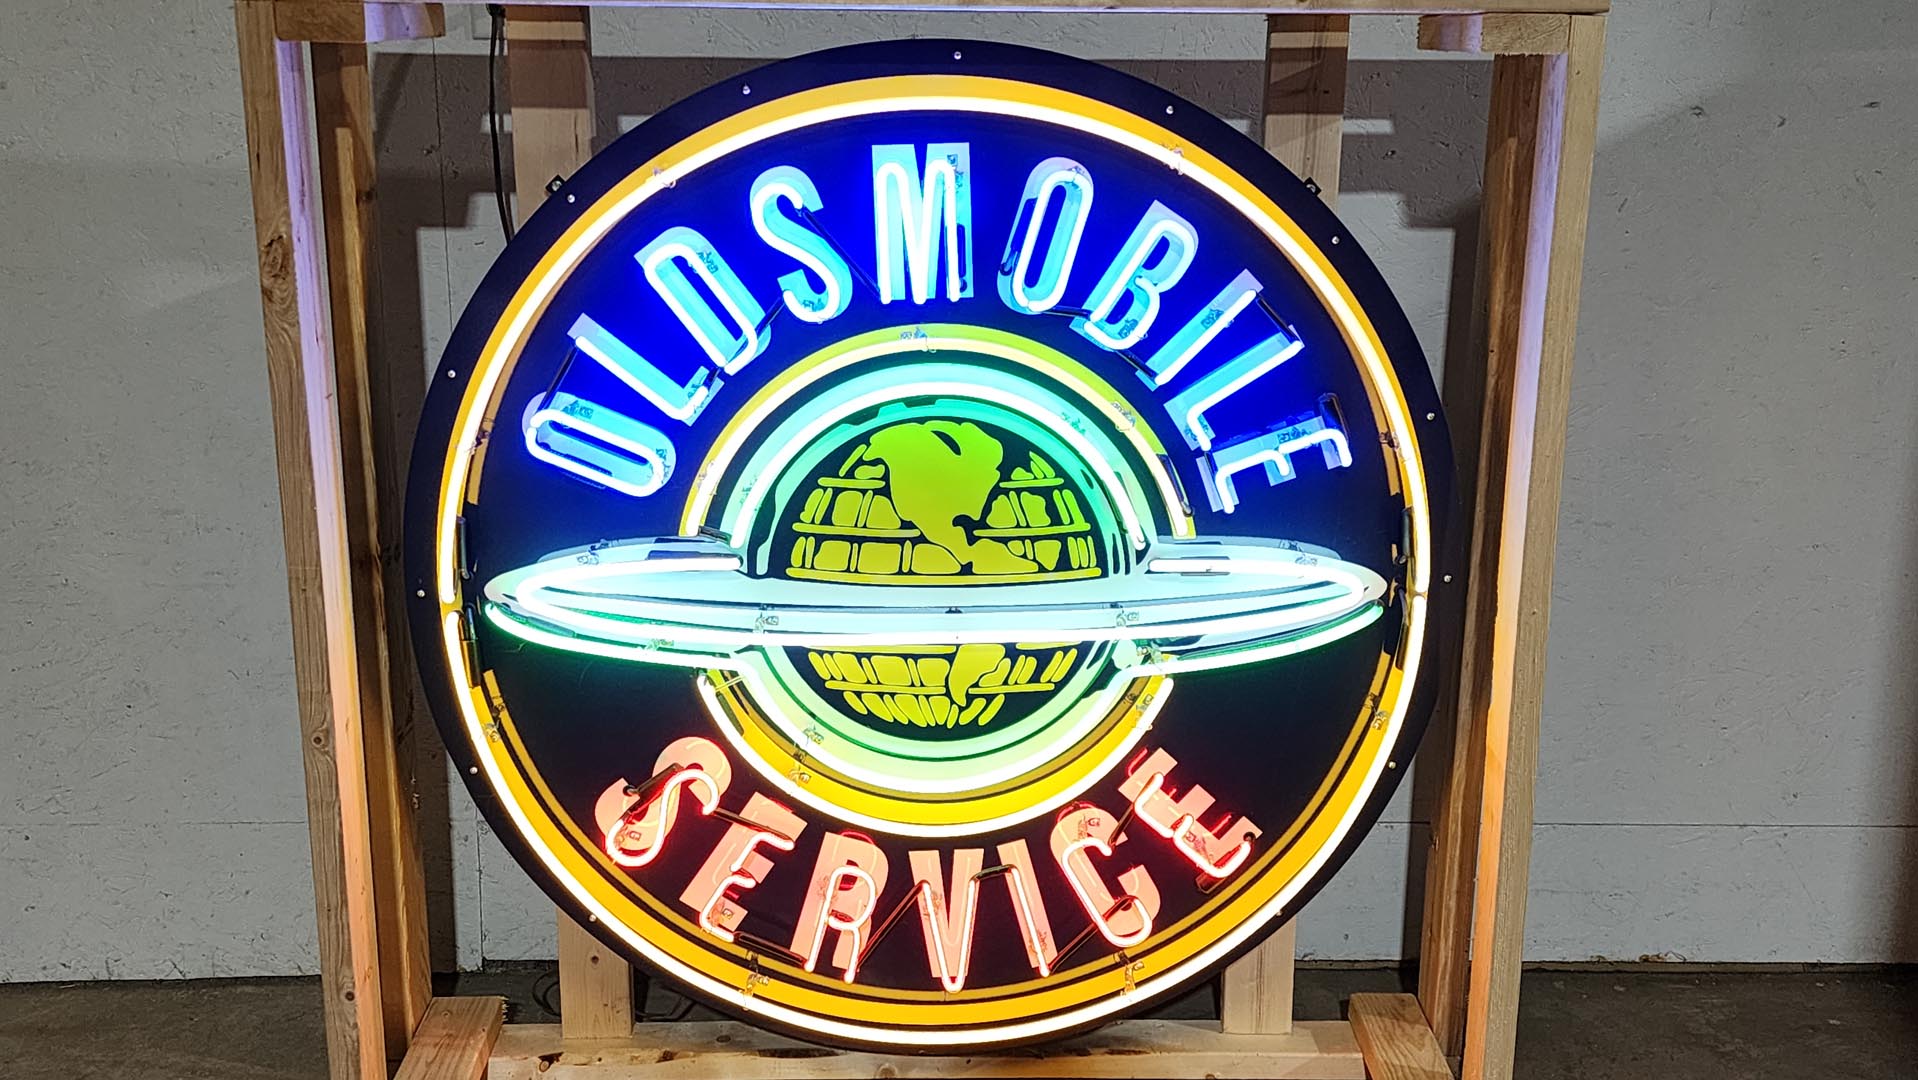  Custom Oldsmobile Globe Servic e Neon Lighted Sign 